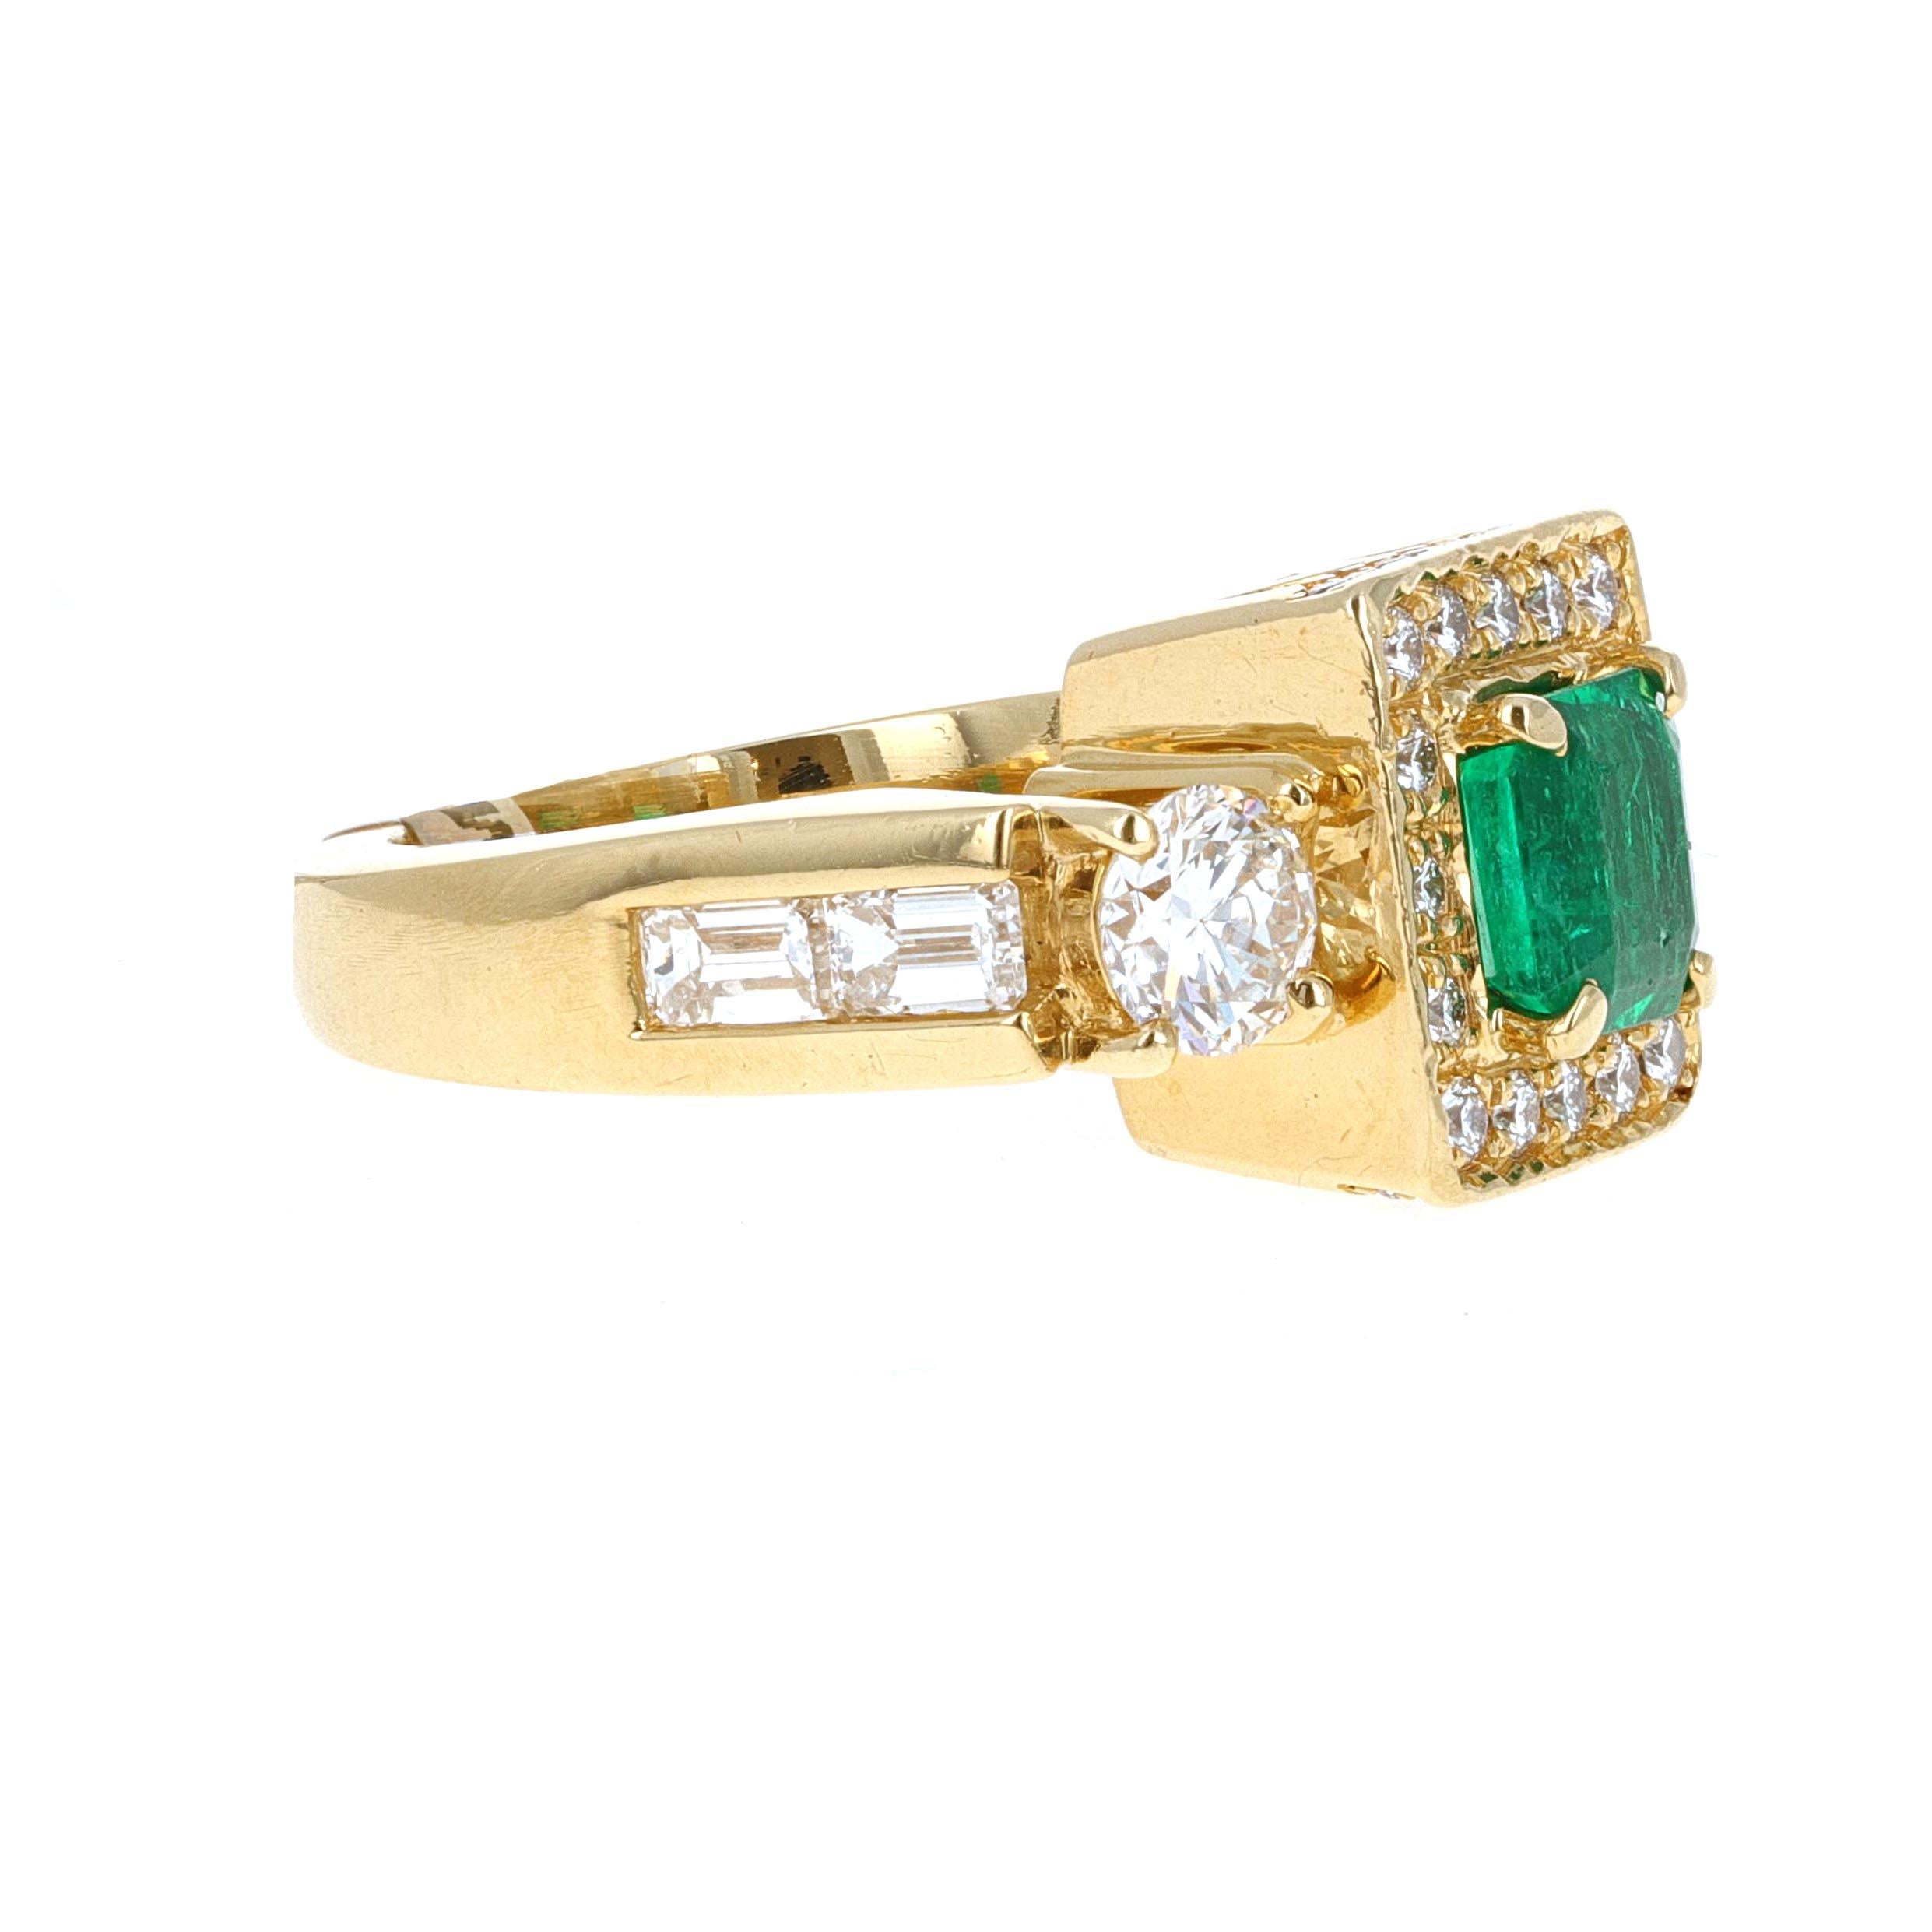 Ring mit drei Steinen aus 18 Karat Gelbgold mit Smaragd und Diamant. Der Mittelstein ist ein geschätzter 1,30 Karat, es ist ein Smaragd geschnitten Smaragd. Rund um den Mittelstein befinden sich 32 Diamanten mit einem geschätzten Gesamtgewicht von